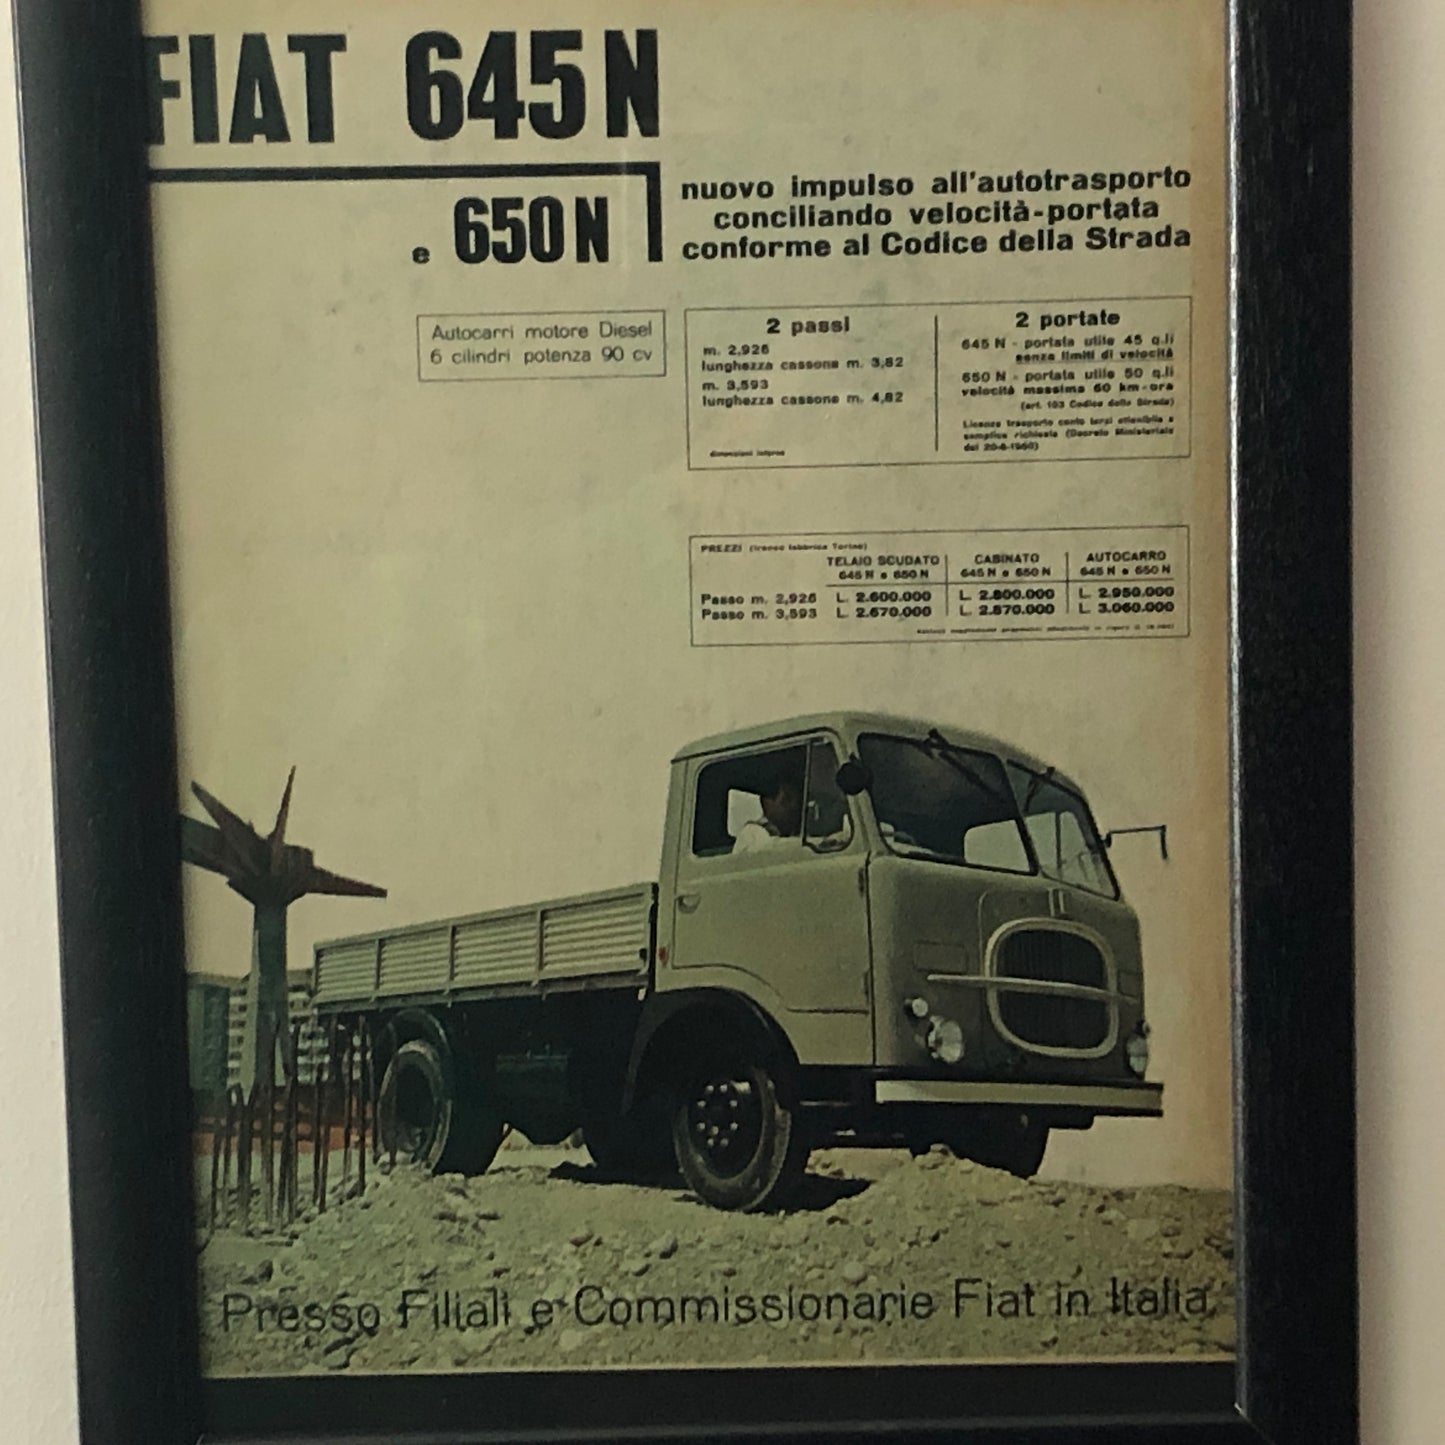 FIAT, Pubblicità Anno 1960 FIAT 645 N e 650 N con Didascalia in Italiano